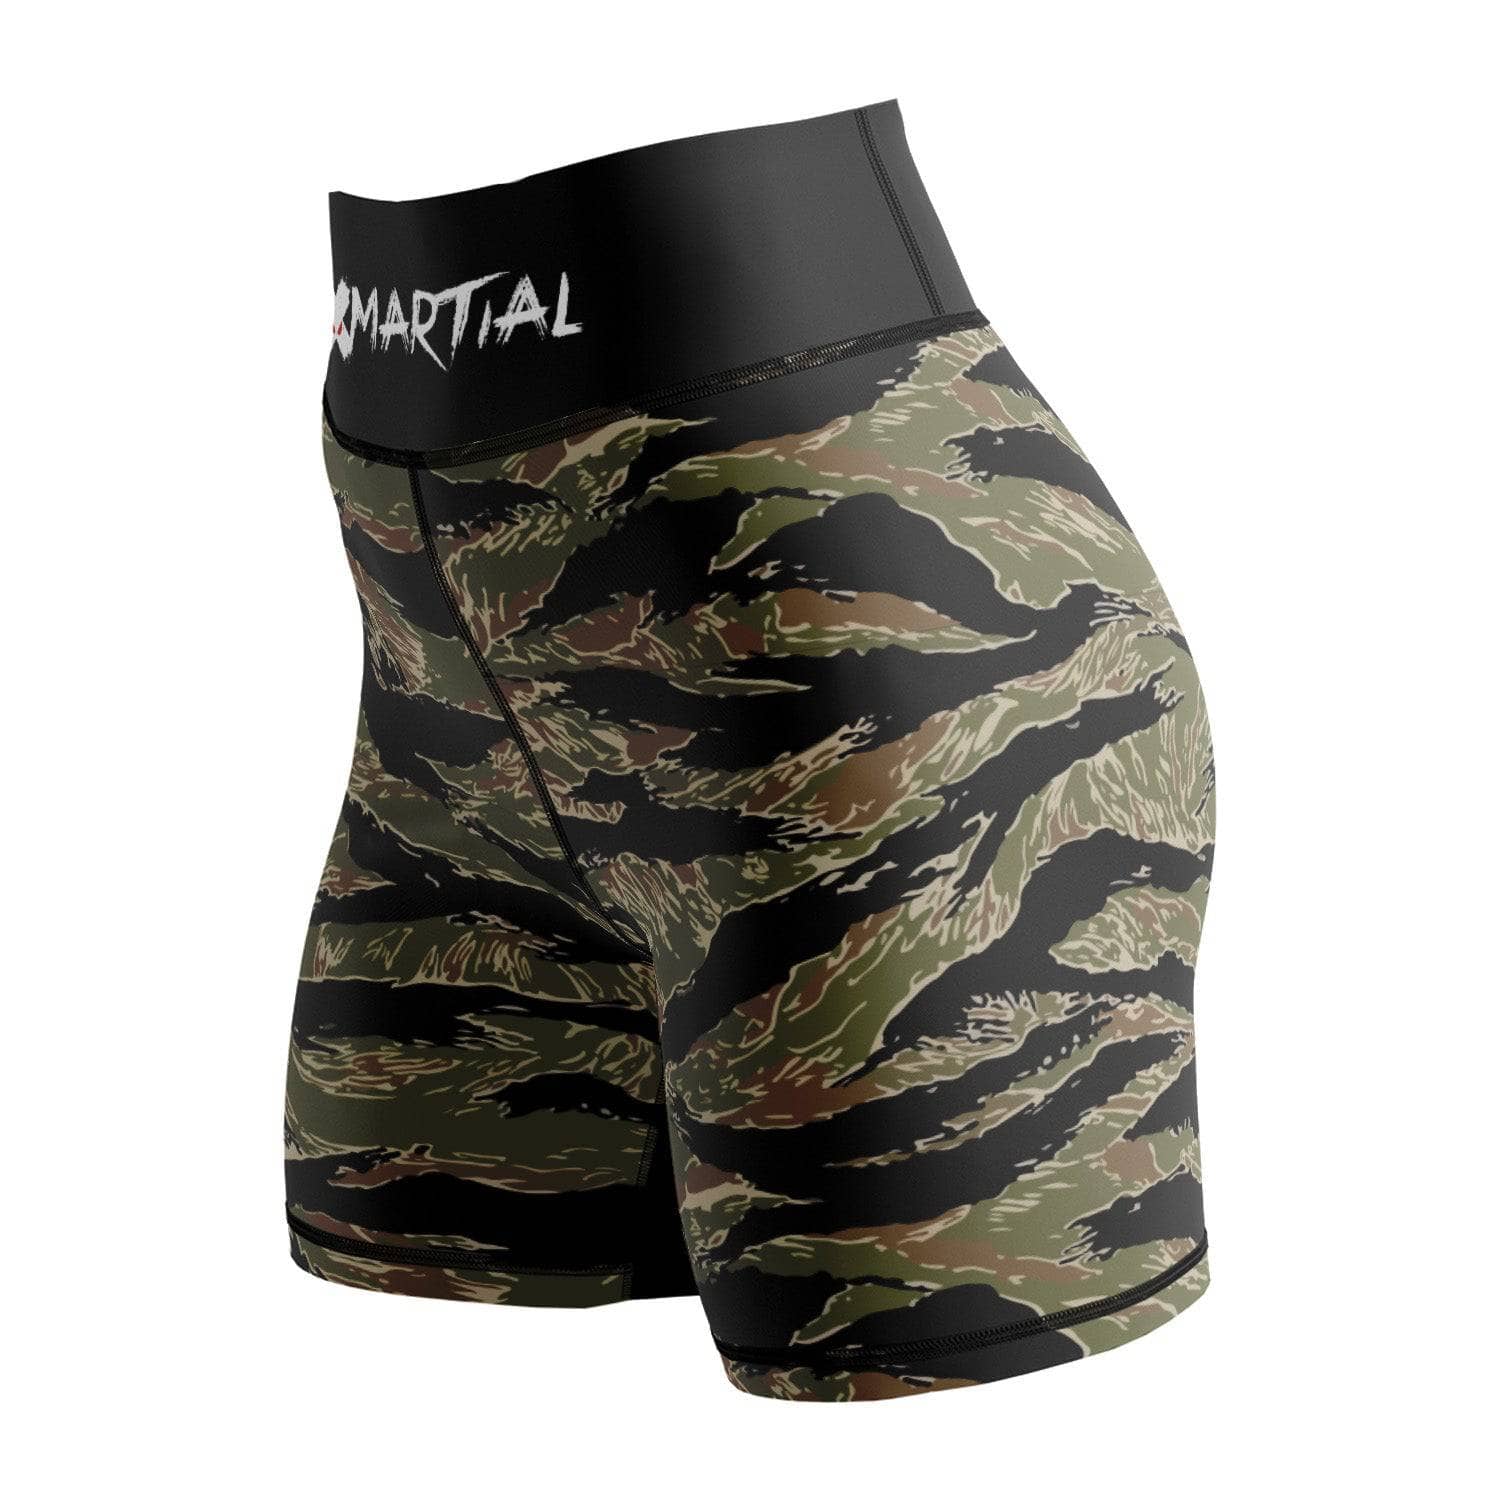 https://www.xmartial.com/cdn/shop/products/xmartial-tiger-camo-women-s-compression-shorts-42376299118756.jpg?v=1679458893